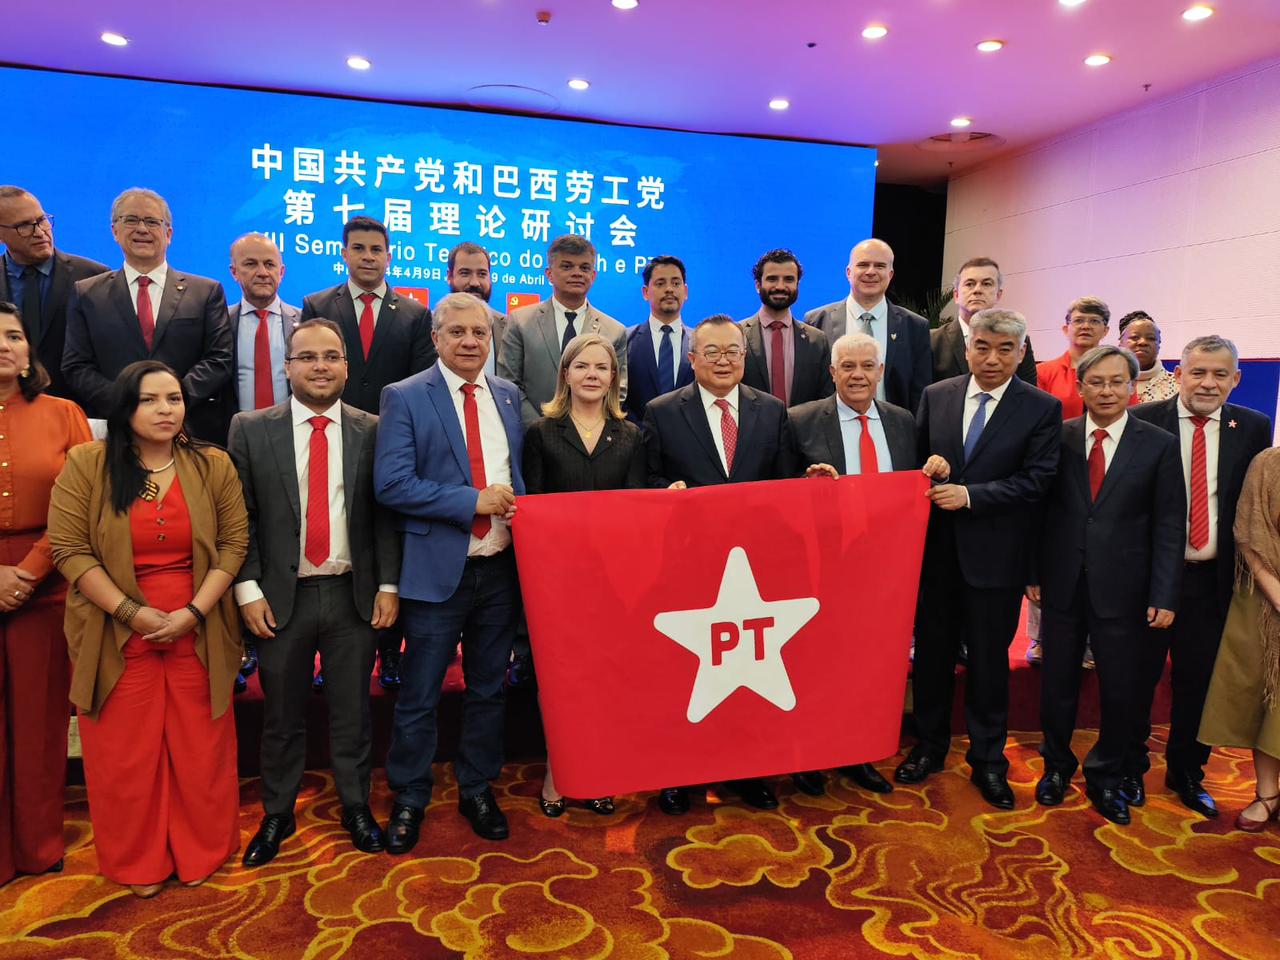 A delegação que participa da visita à China é integrada por dirigentes e lideranças petistas e por deputadas e deputados federais e estaduais de diversos estados brasileiros.